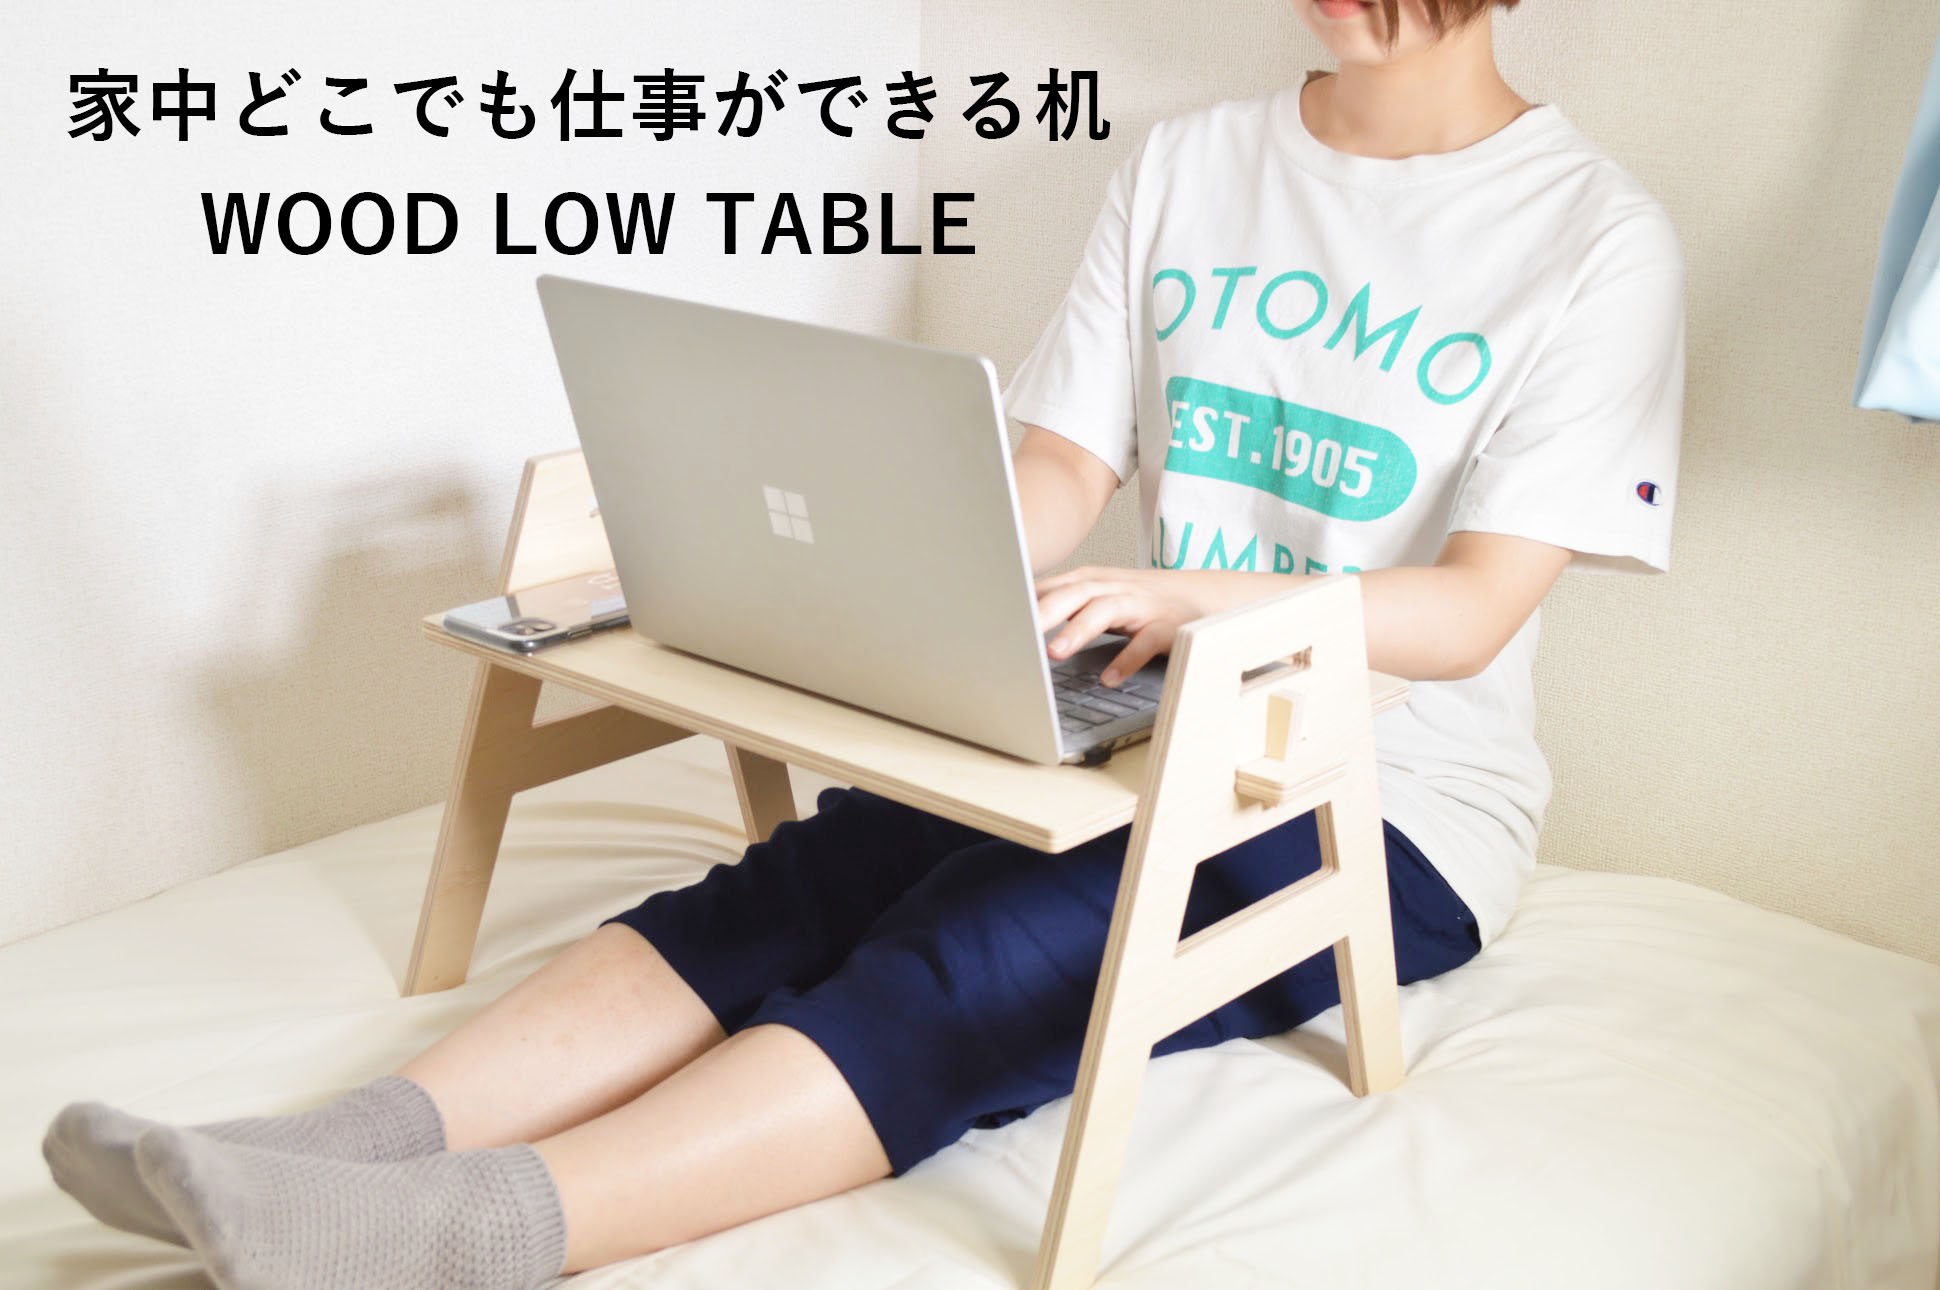 【新商品】家中どこでも仕事ができる机『WOOD LOW TABLE』